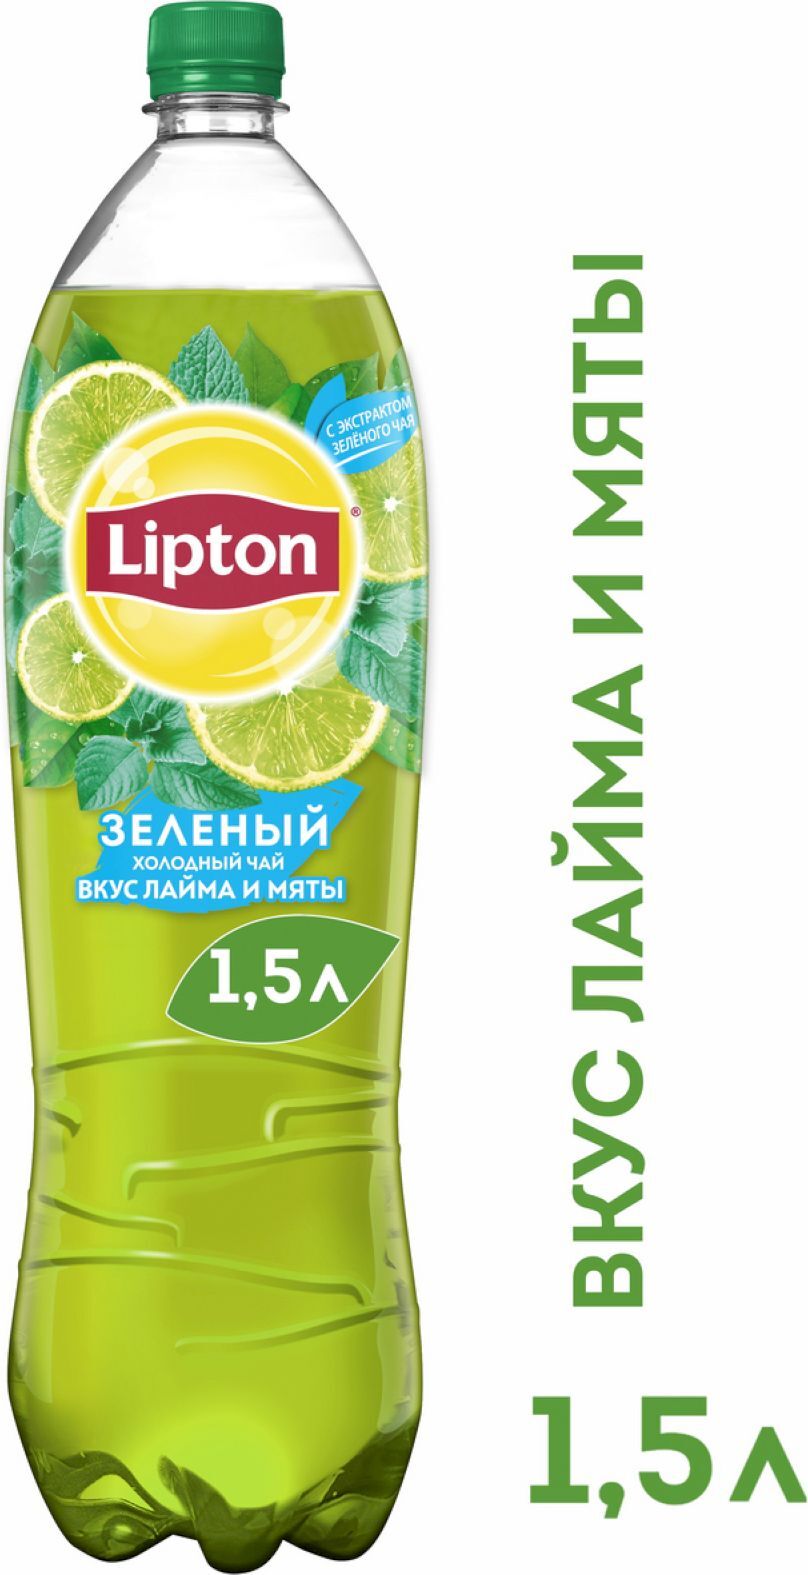 Липтон 1.5. Липтон зеленый холодный чай мята. Липтон зеленый чай 1.5. Липтон зеленый 1.5 л.